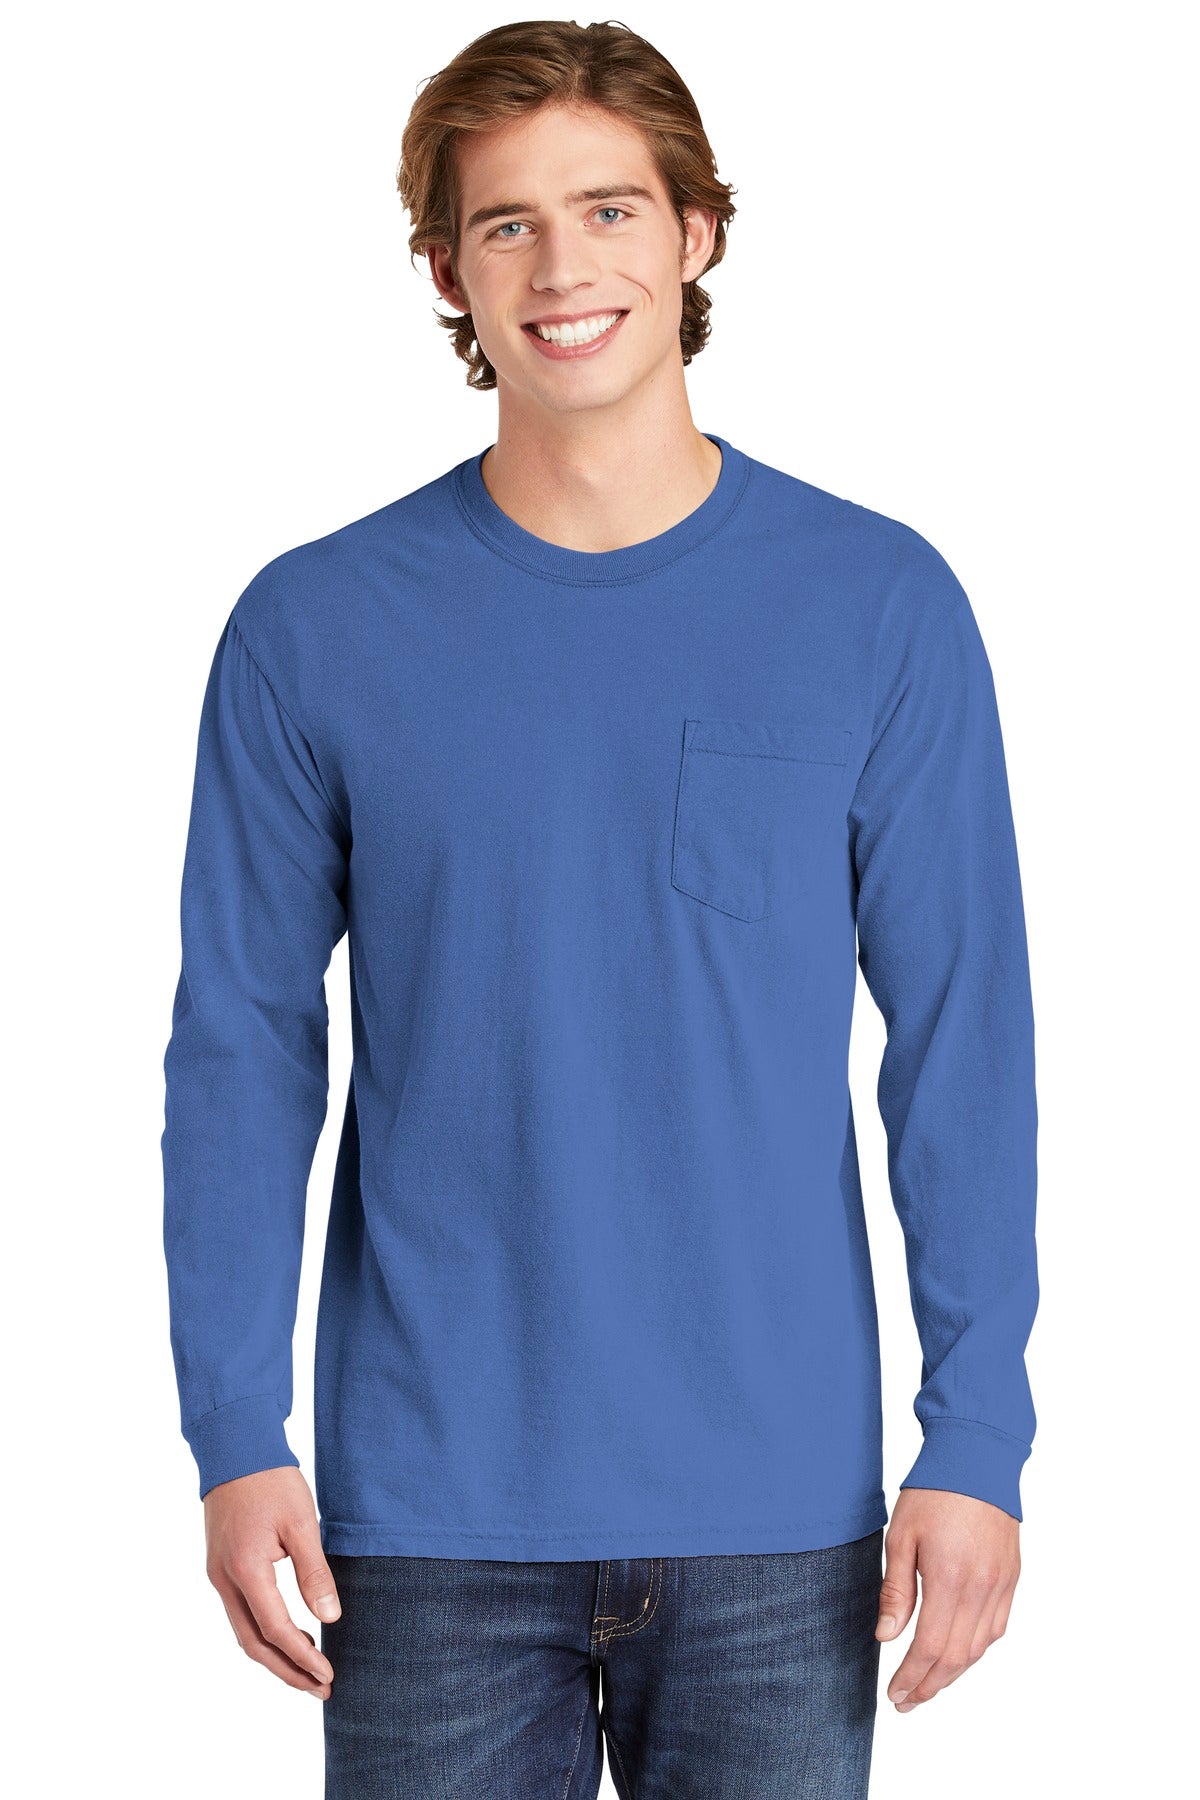 Photo of Comfort Colors T-Shirts 4410  color  Flo Blue